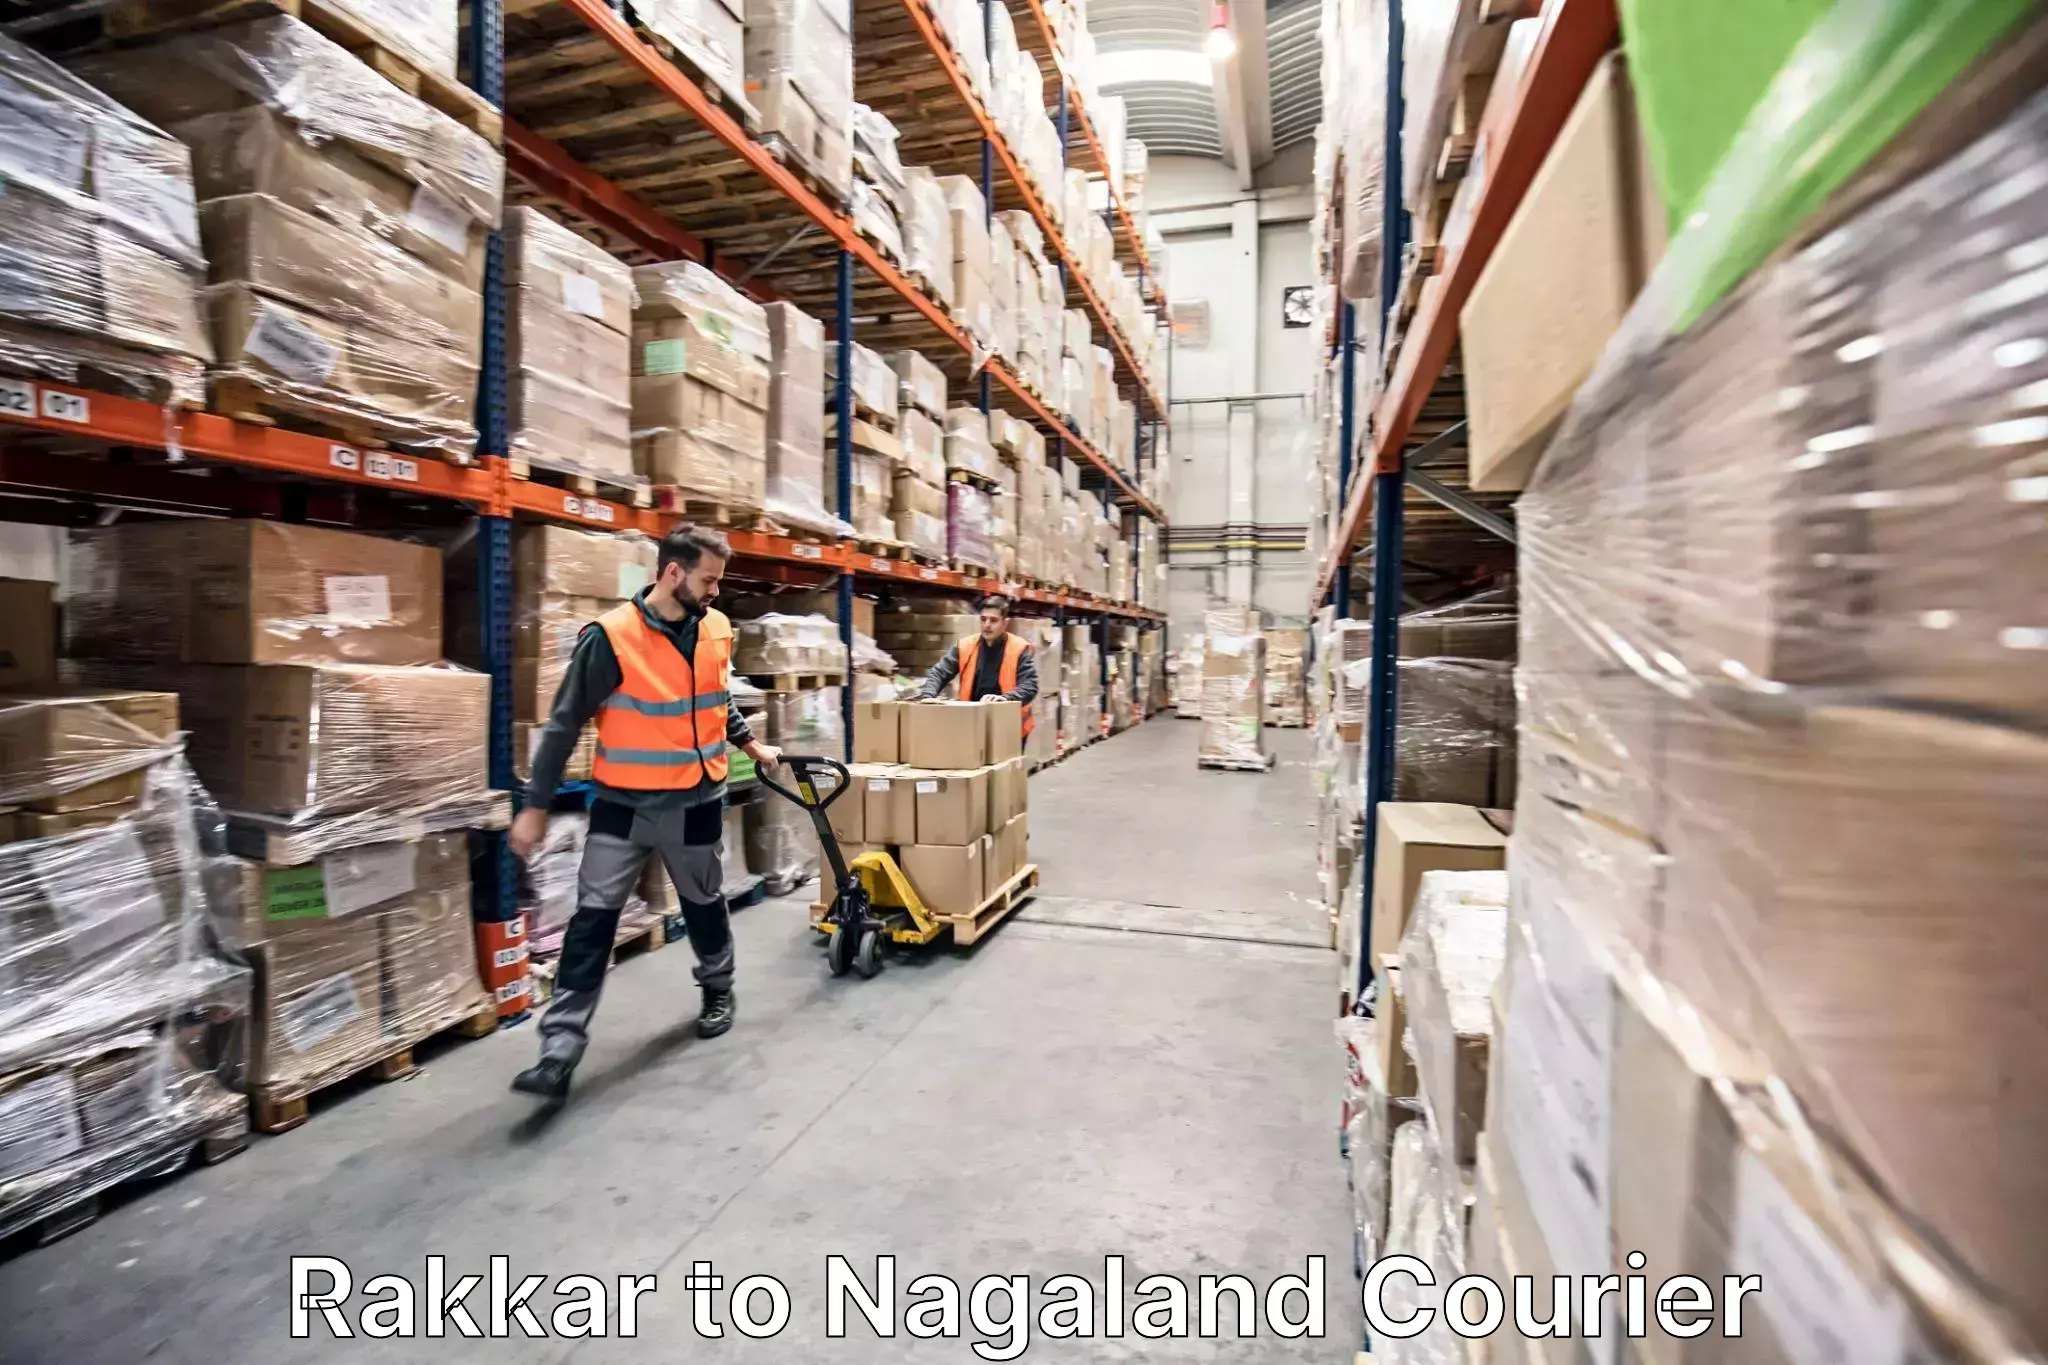 Trusted moving company Rakkar to Longleng